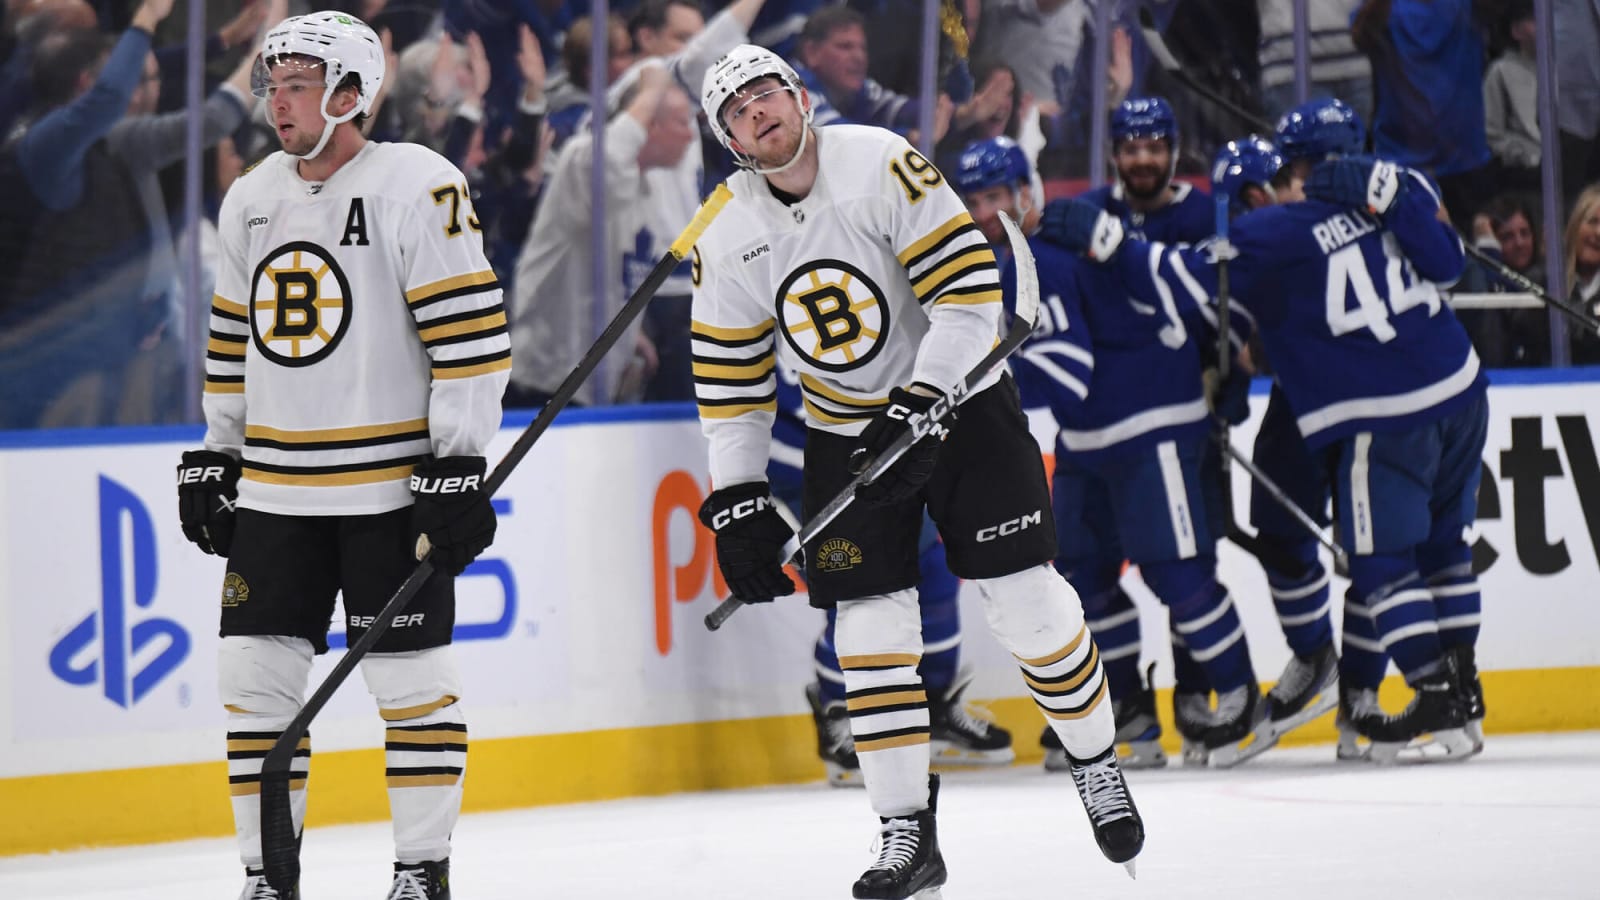 Bruins Postgame: Bruins Choking Again, Lose Game 6 2-1